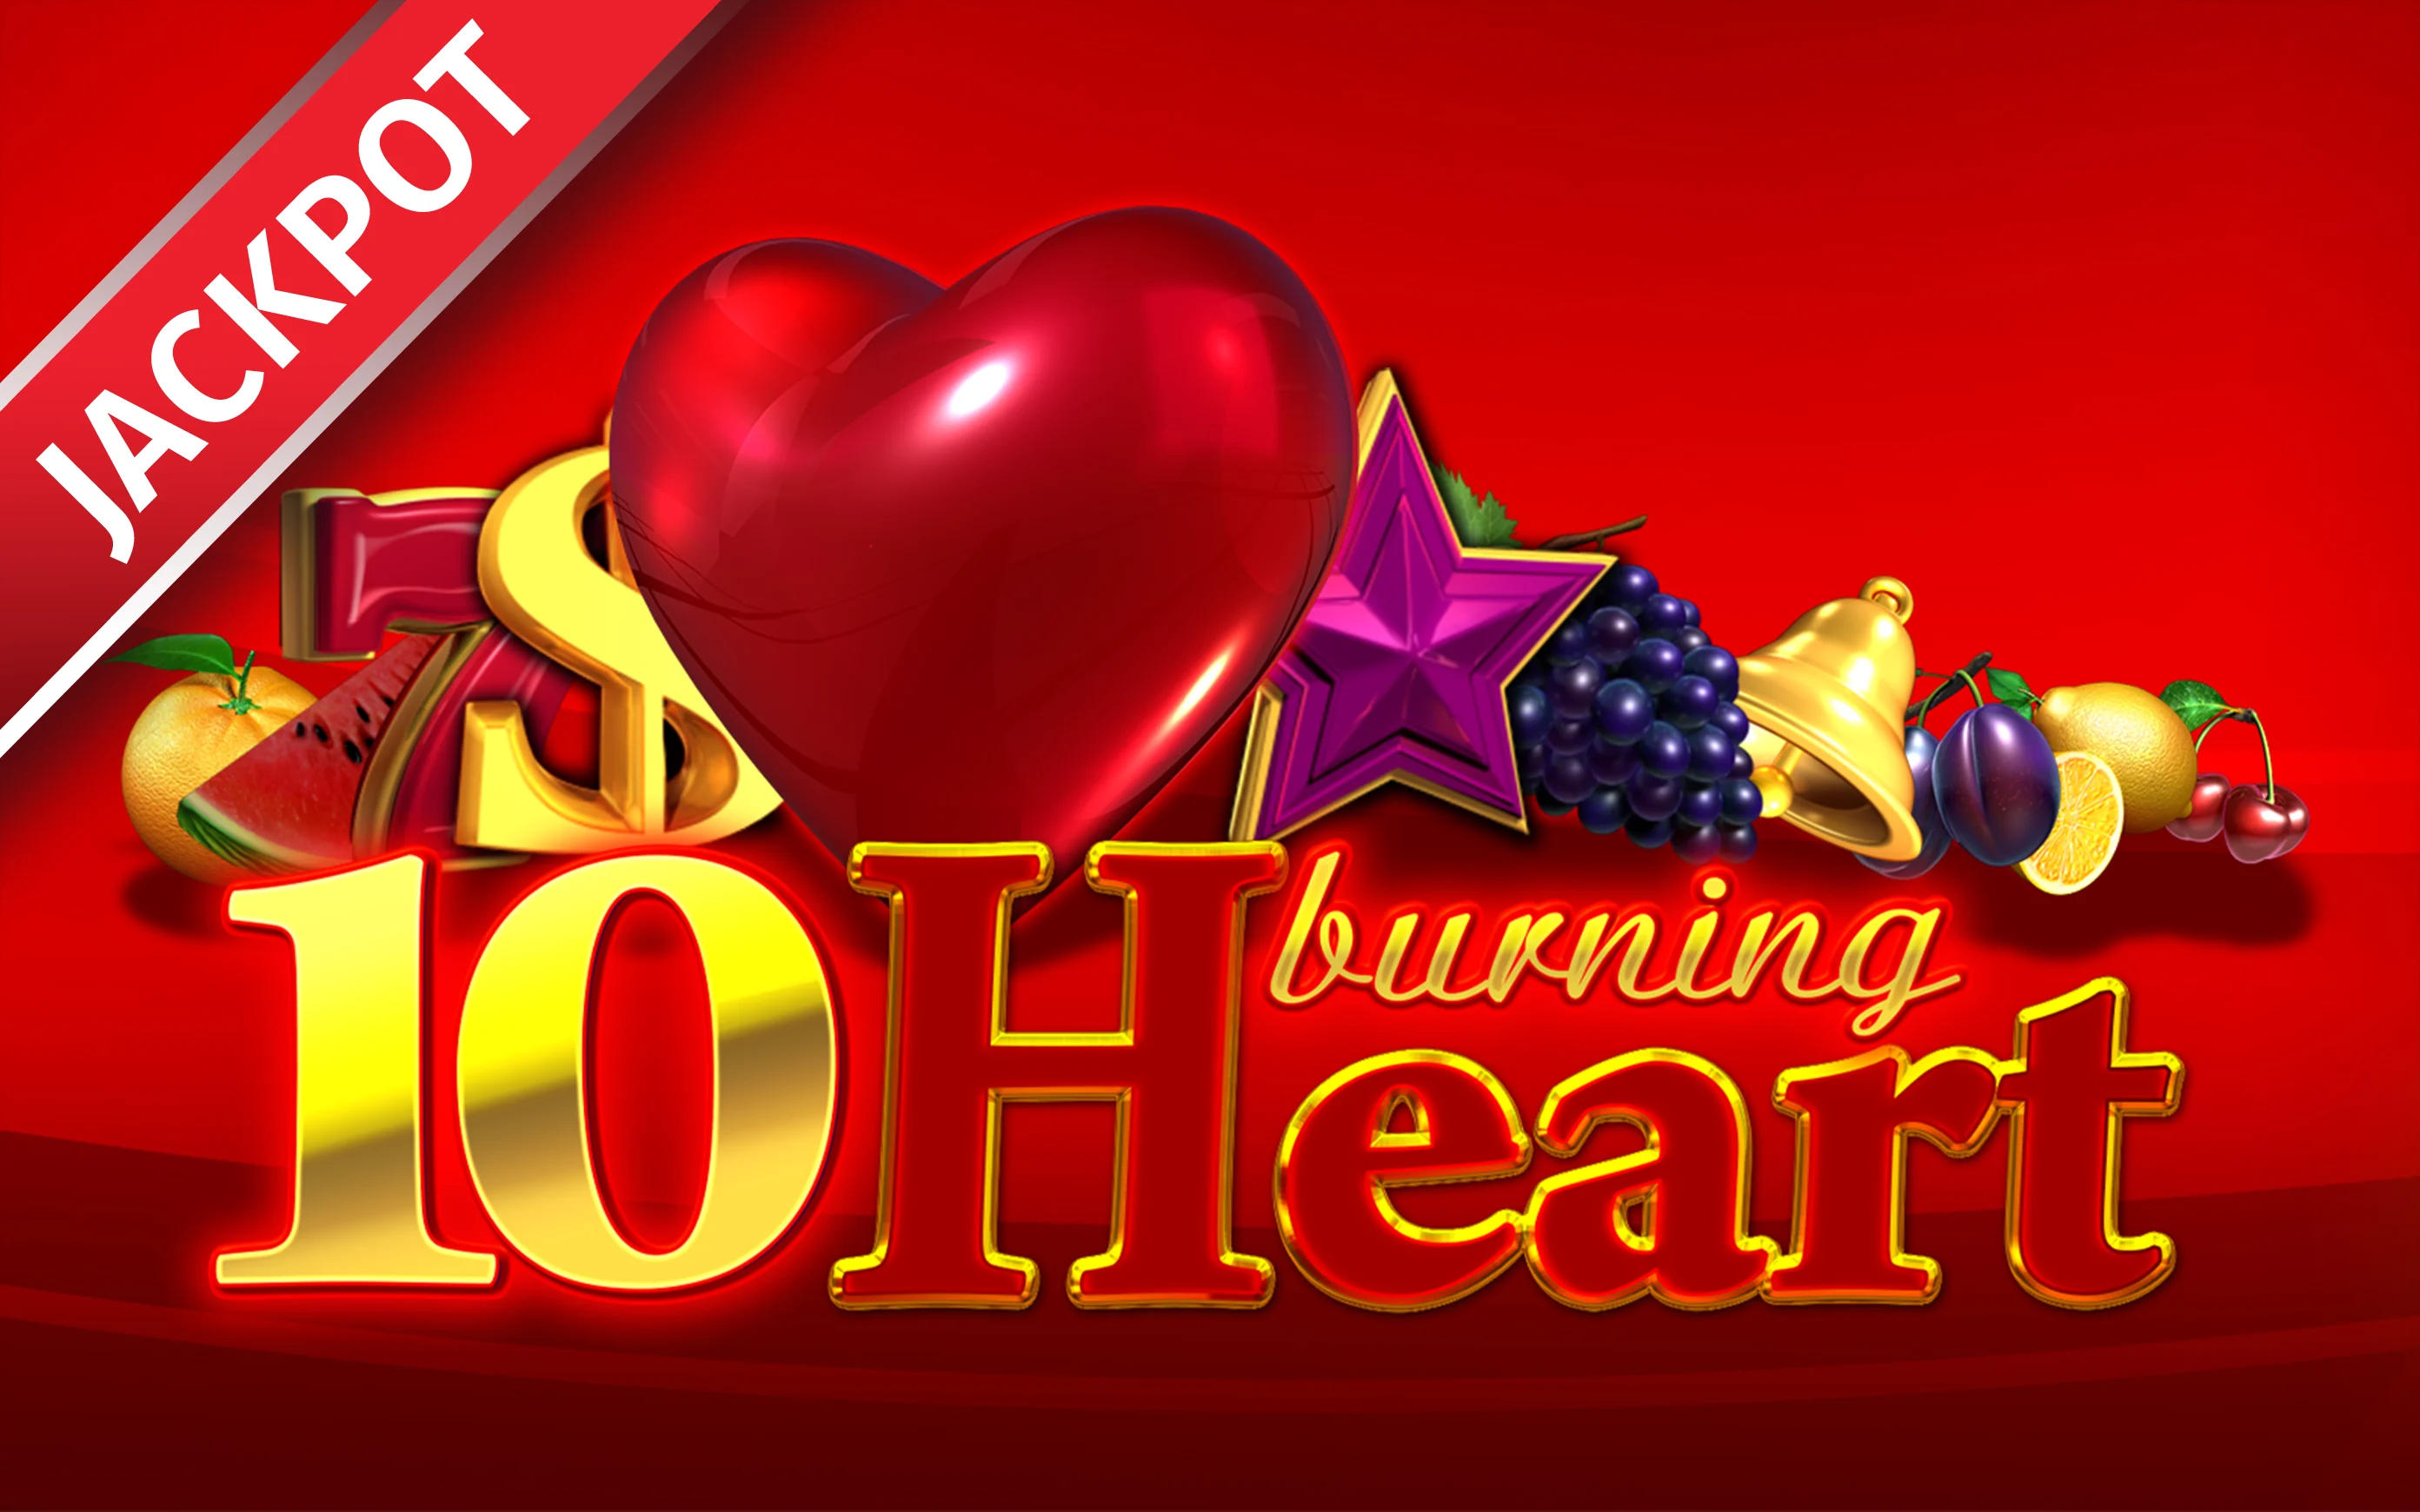 Παίξτε 10 Burning heart στο online καζίνο Starcasino.be